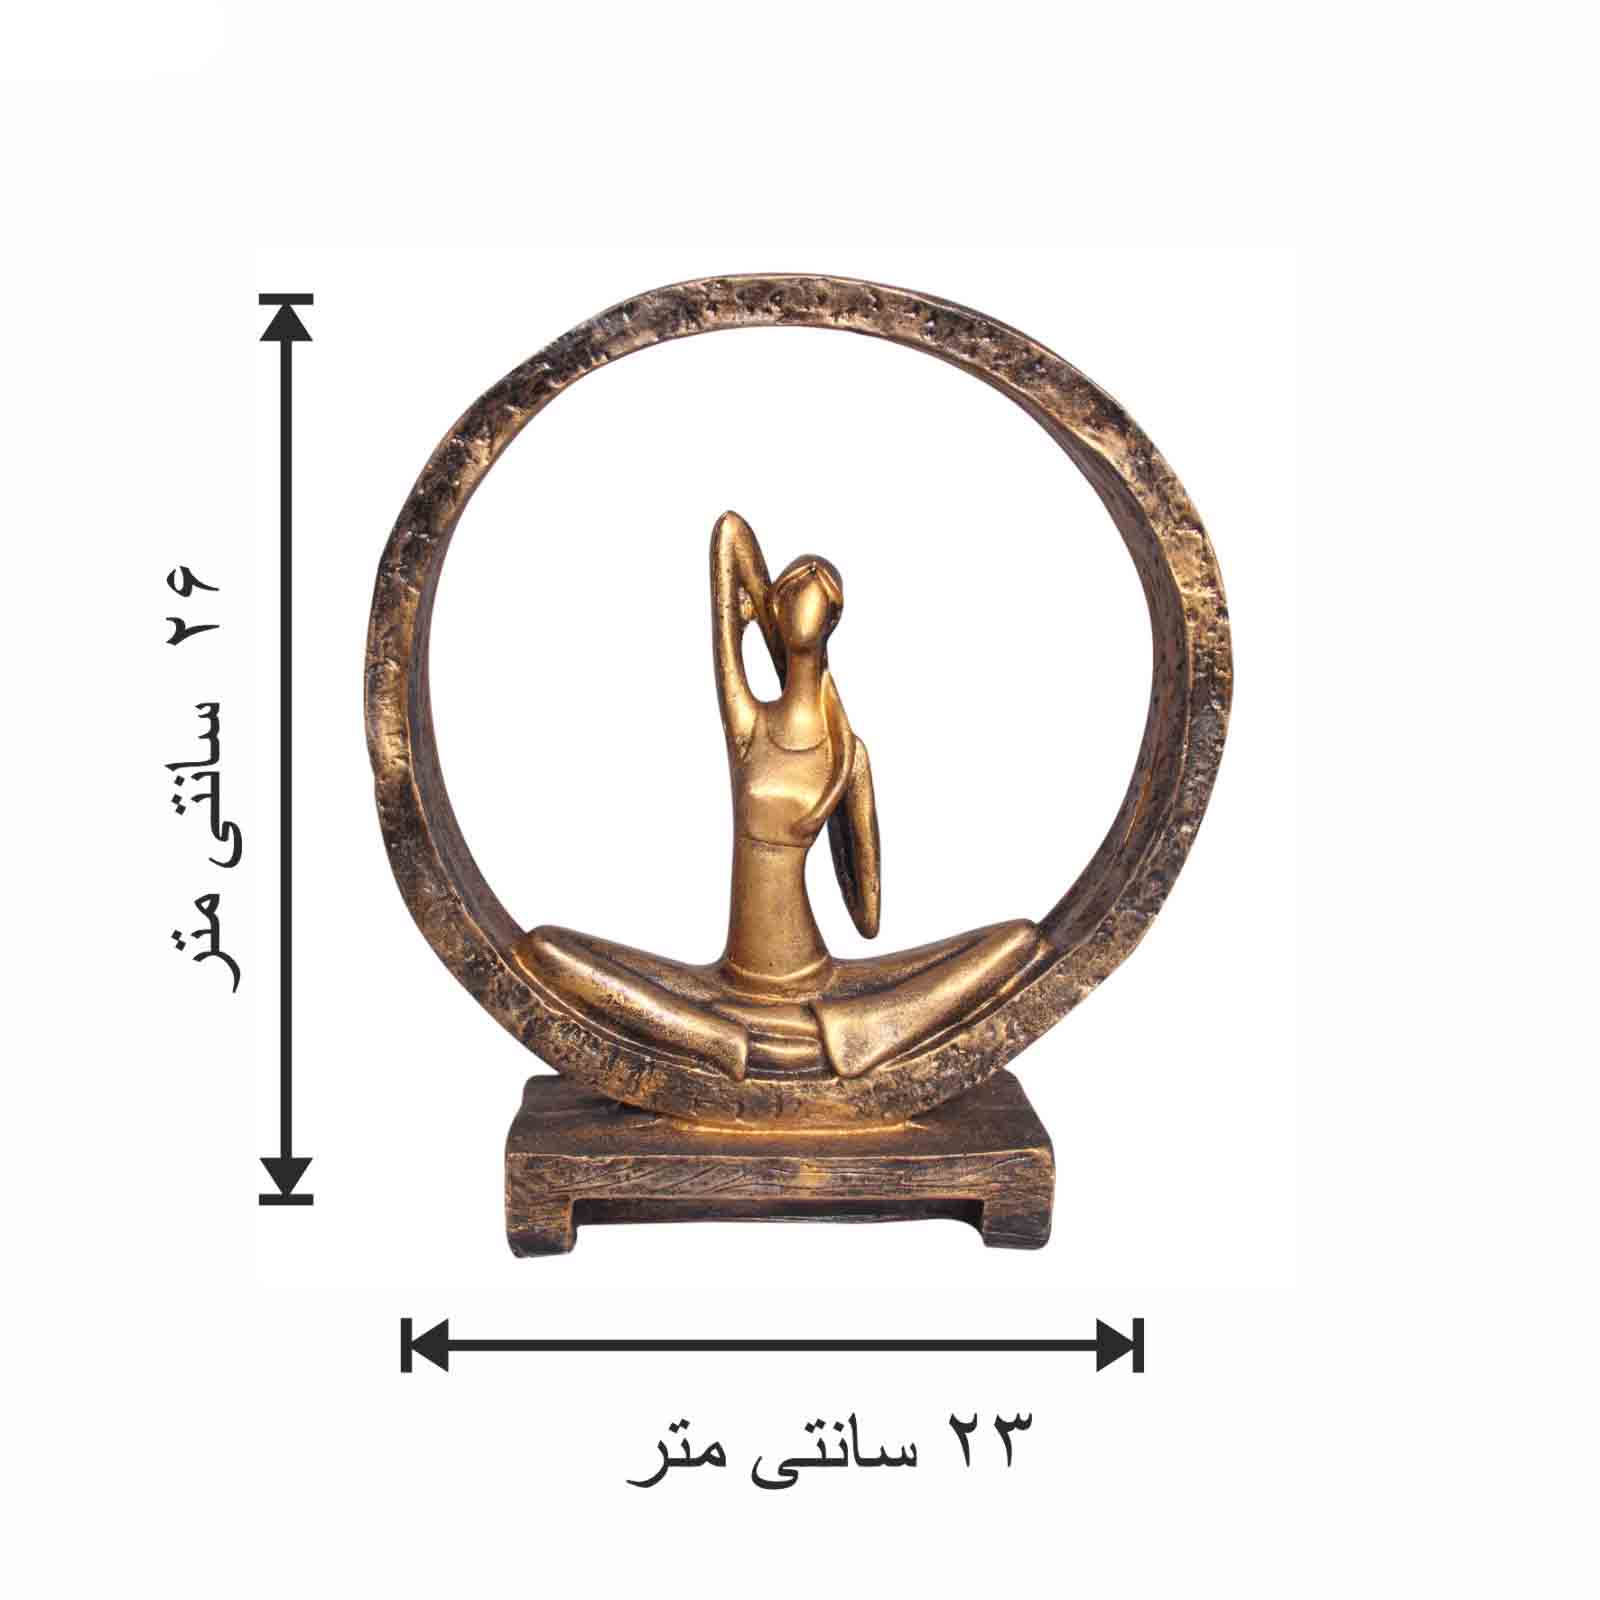 مجسمه یوگا زن مدل حلقه دور s1 - ونداهایپر